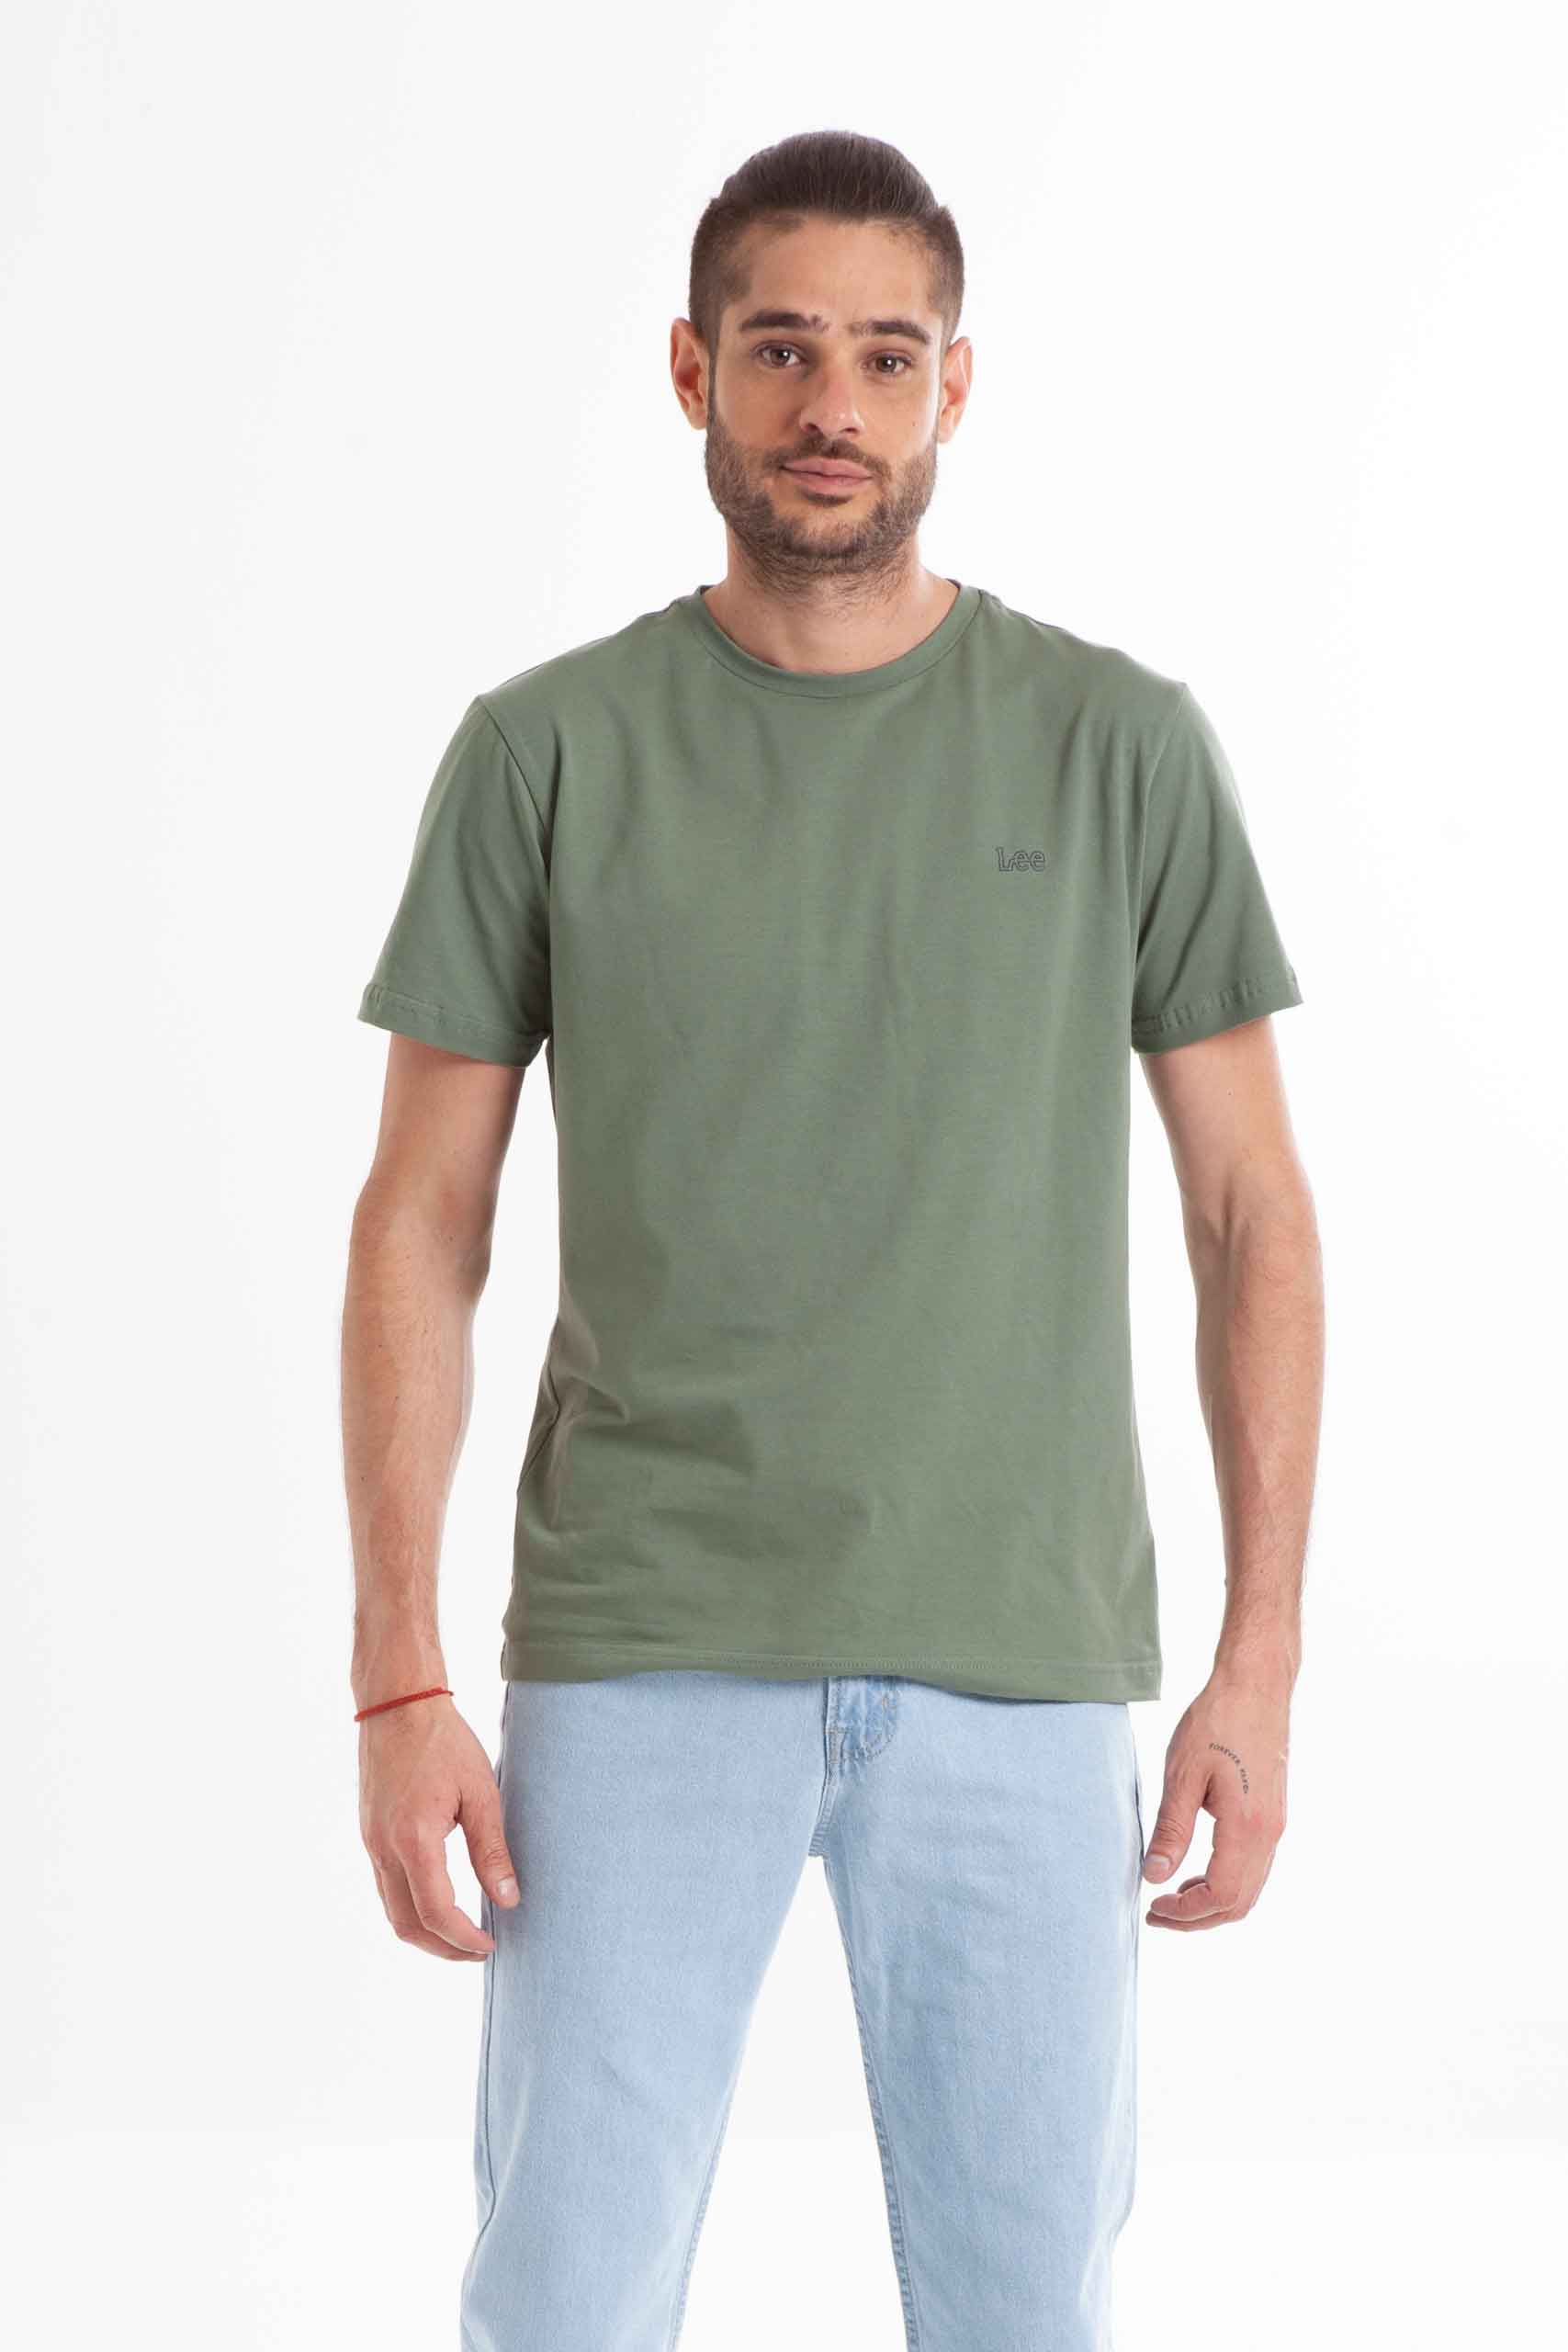 Vista frontal de camiseta de color verde de marca lee